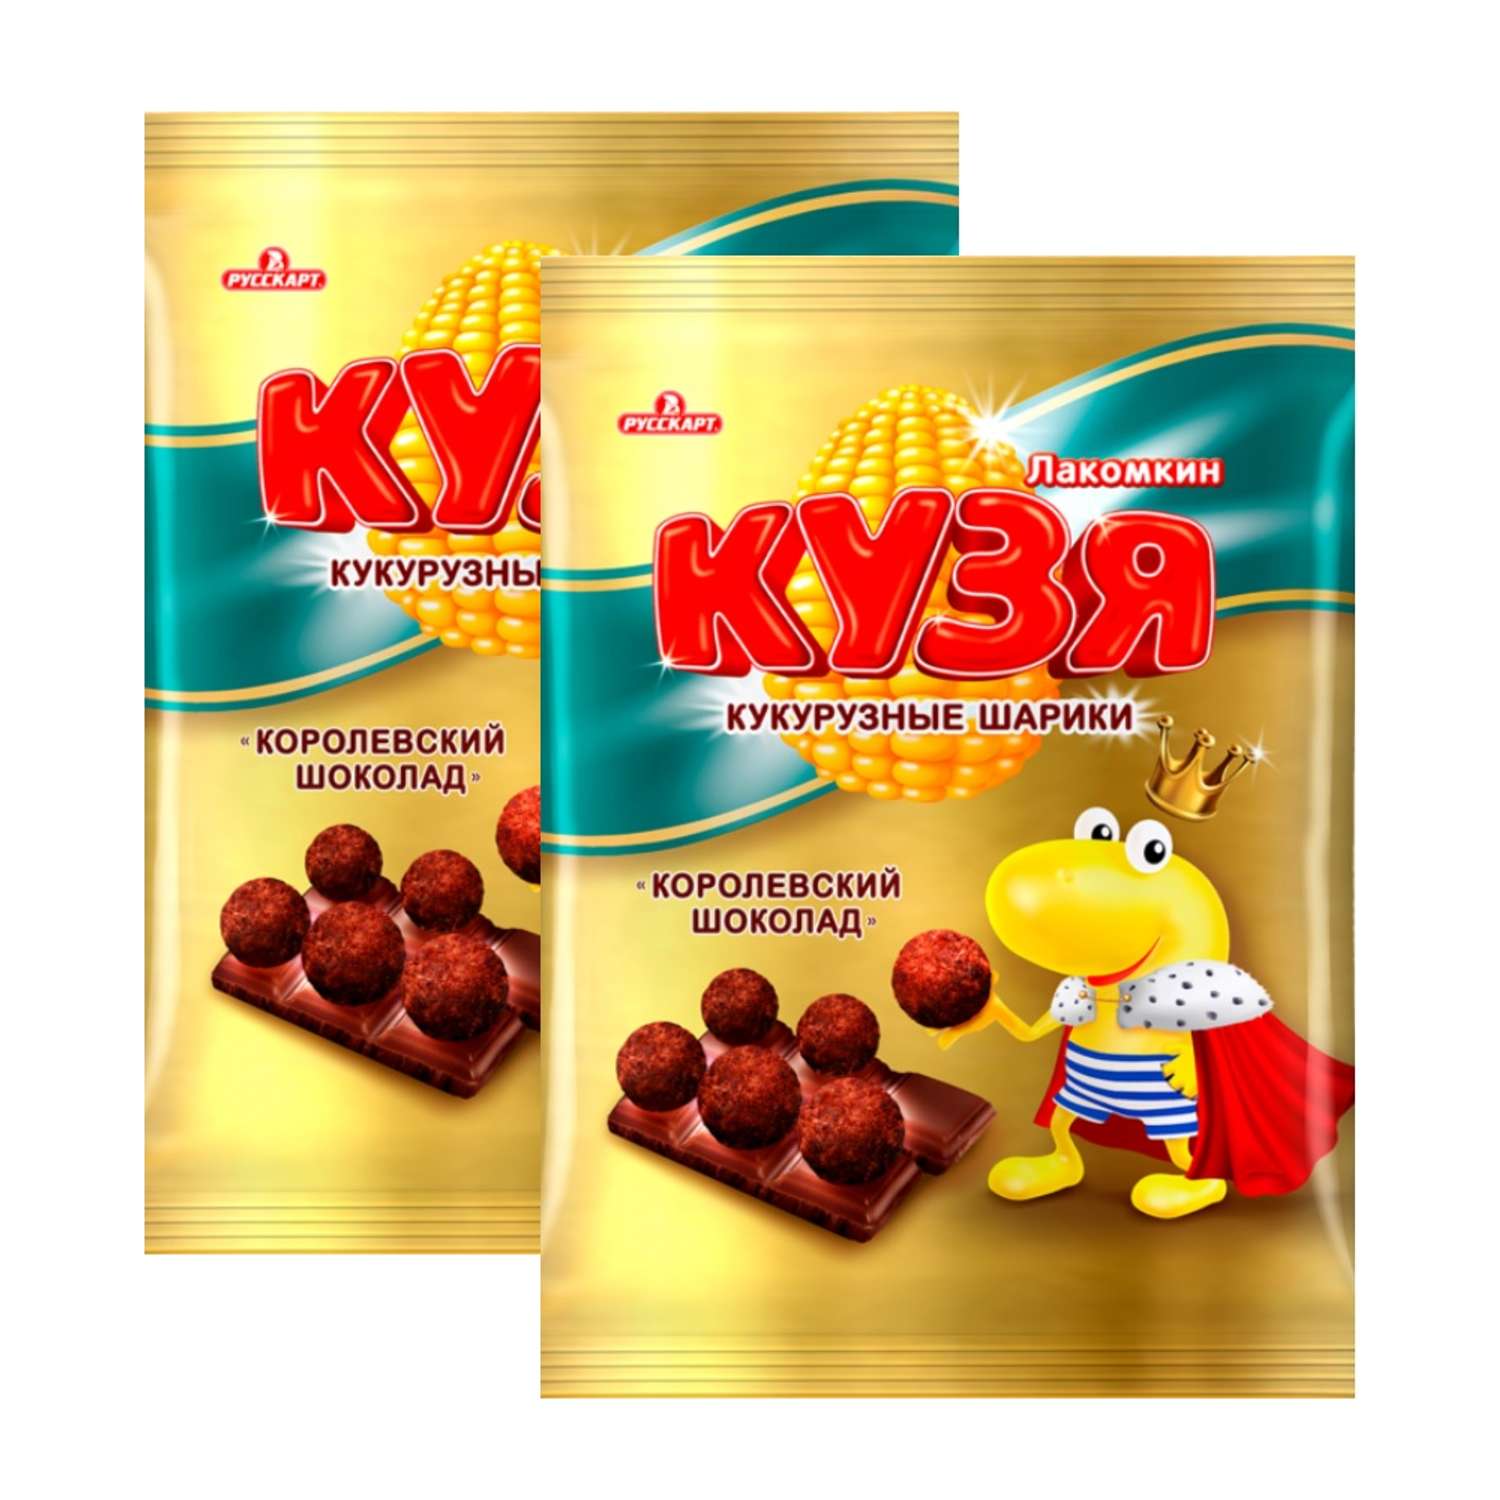 Кукурузные шарики Русскарт Кузя лакомкин Королевский шоколад 2 шт по 100г - фото 1